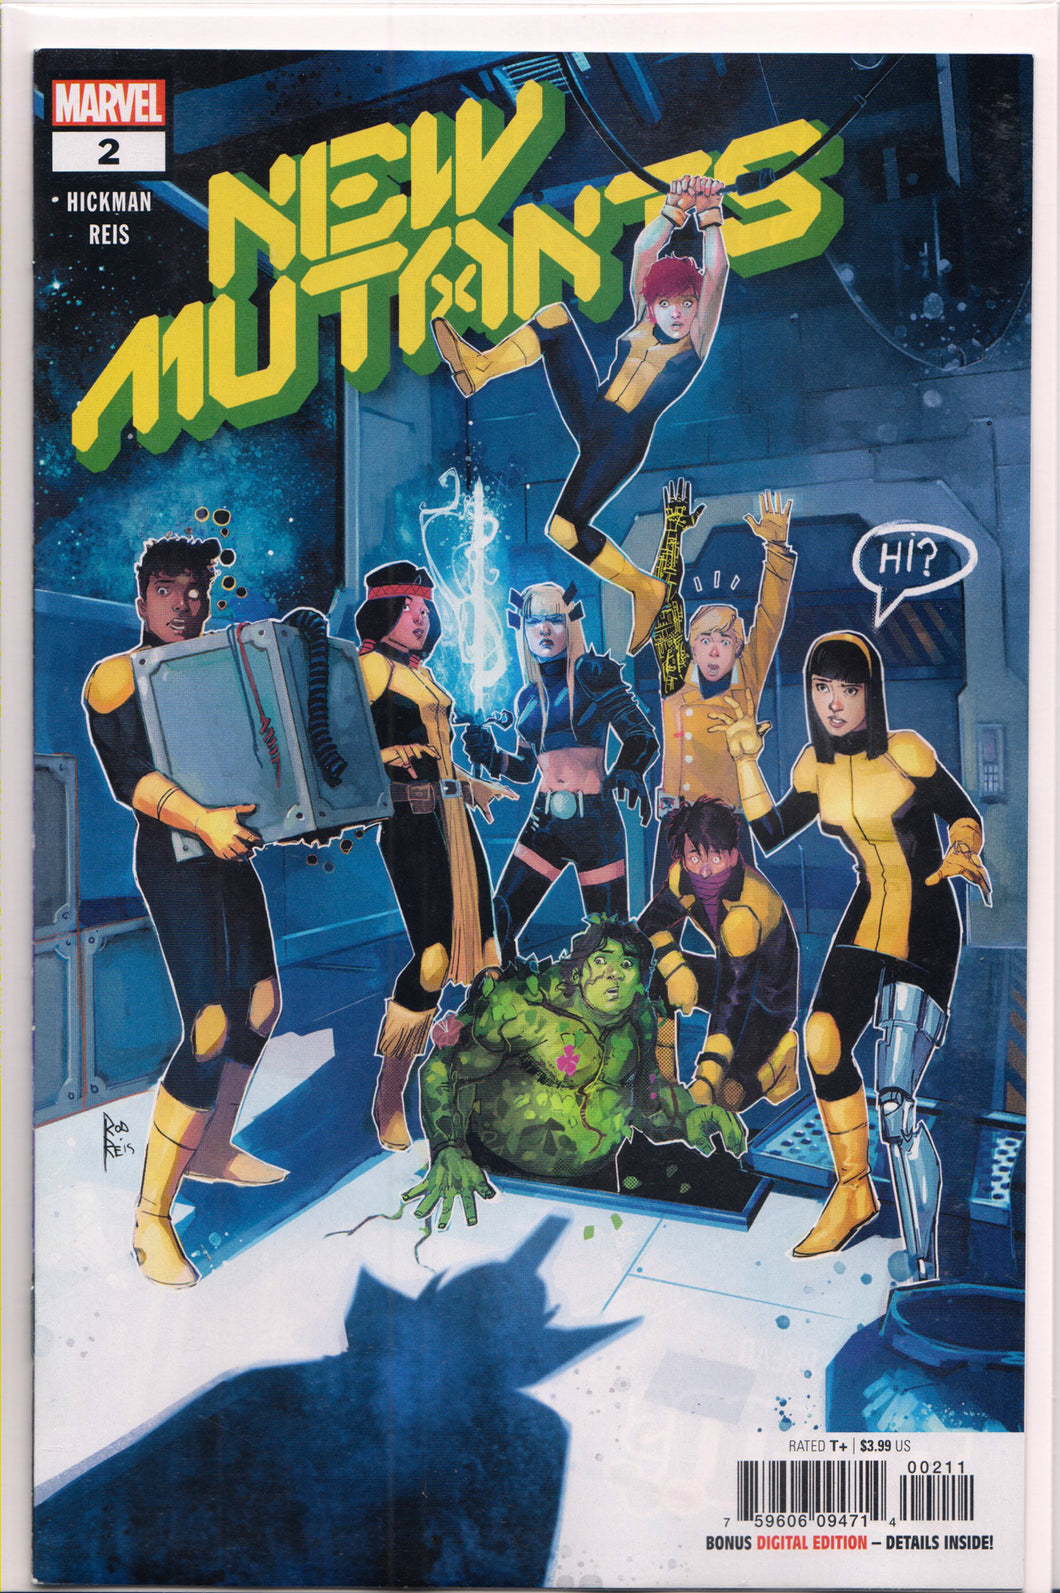 NEW MUTANTS #2 (1ST PRINT) COMIC BOOK ~ Marvel Comics